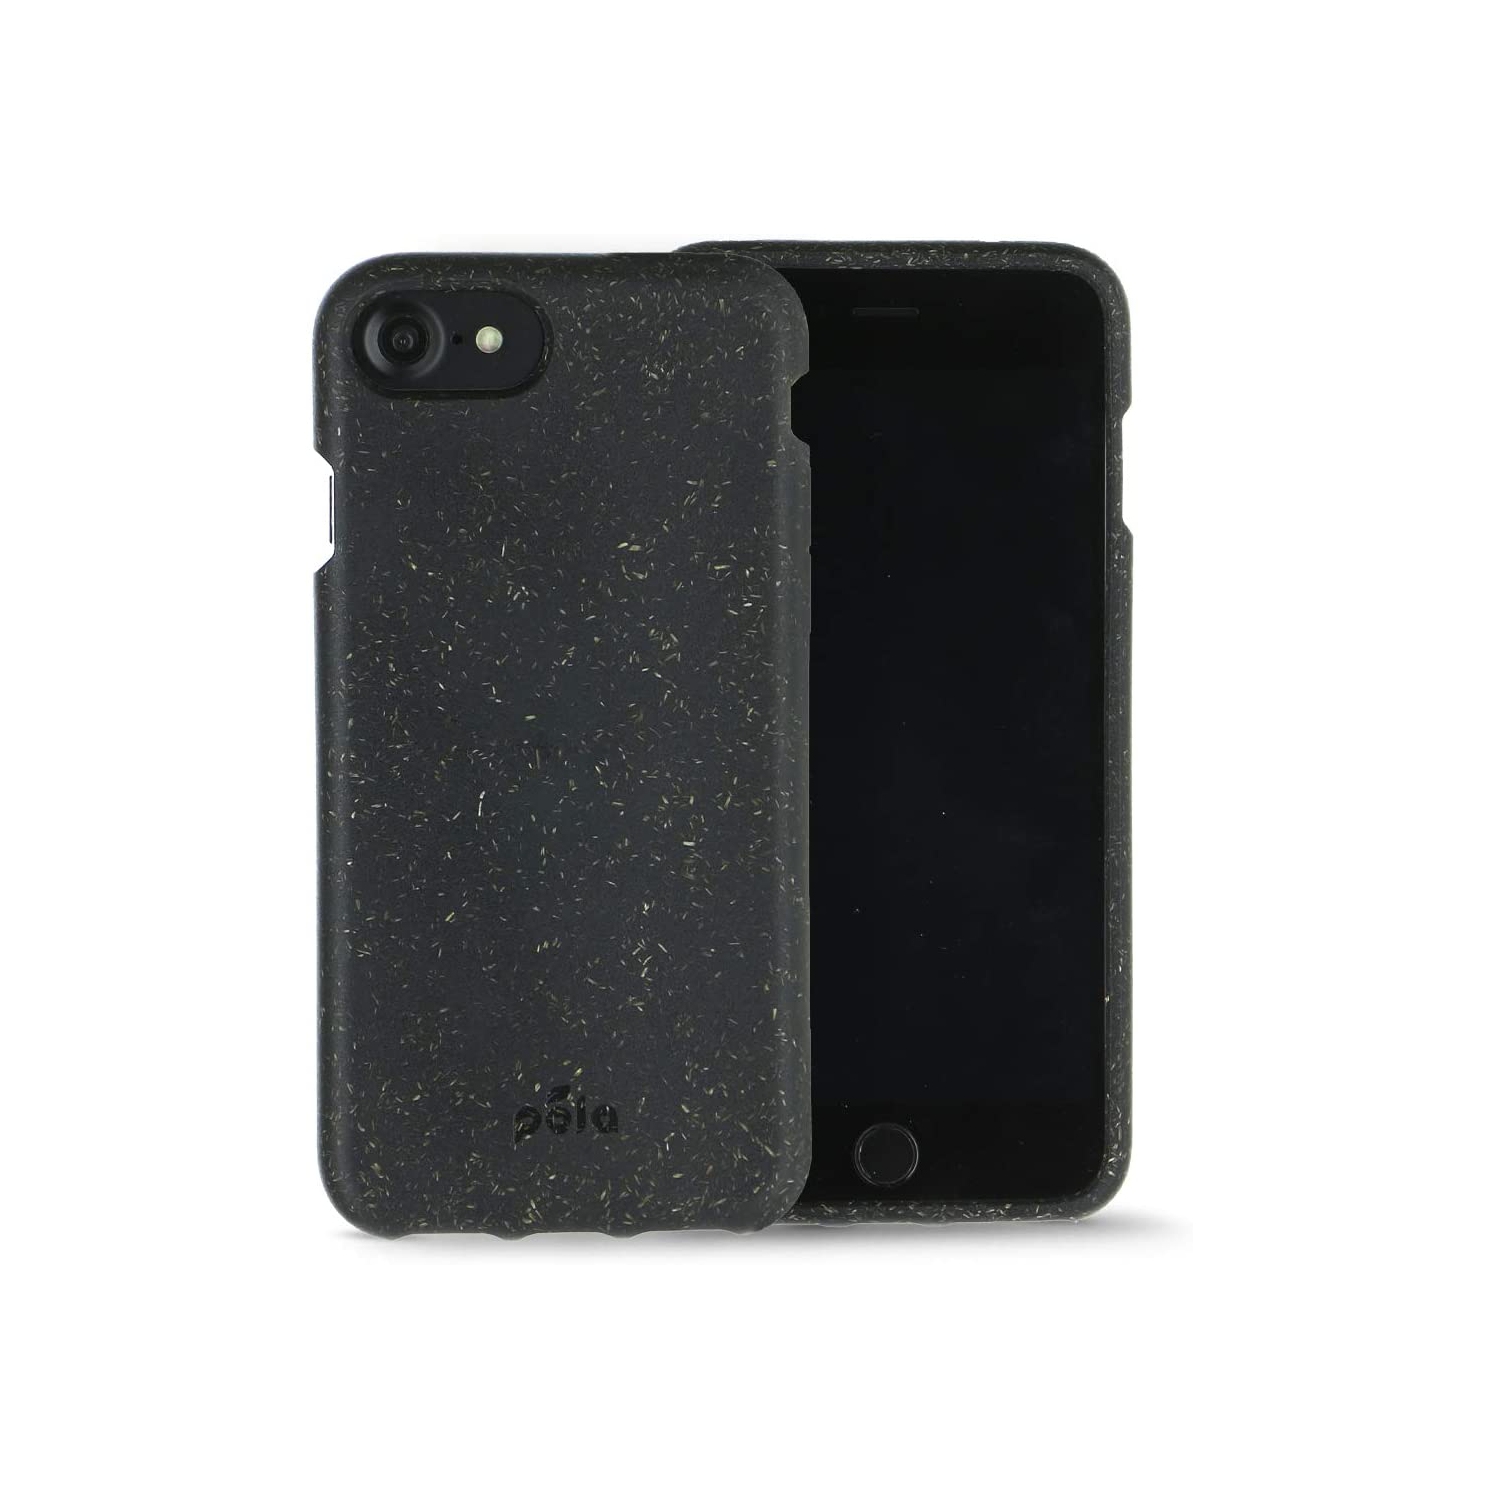 iPhone 6 / 6s / 7/8 /New SE Case: Eco-Friendly - 100% Bio - Designed in Canada (6/6s/7/8 Black)